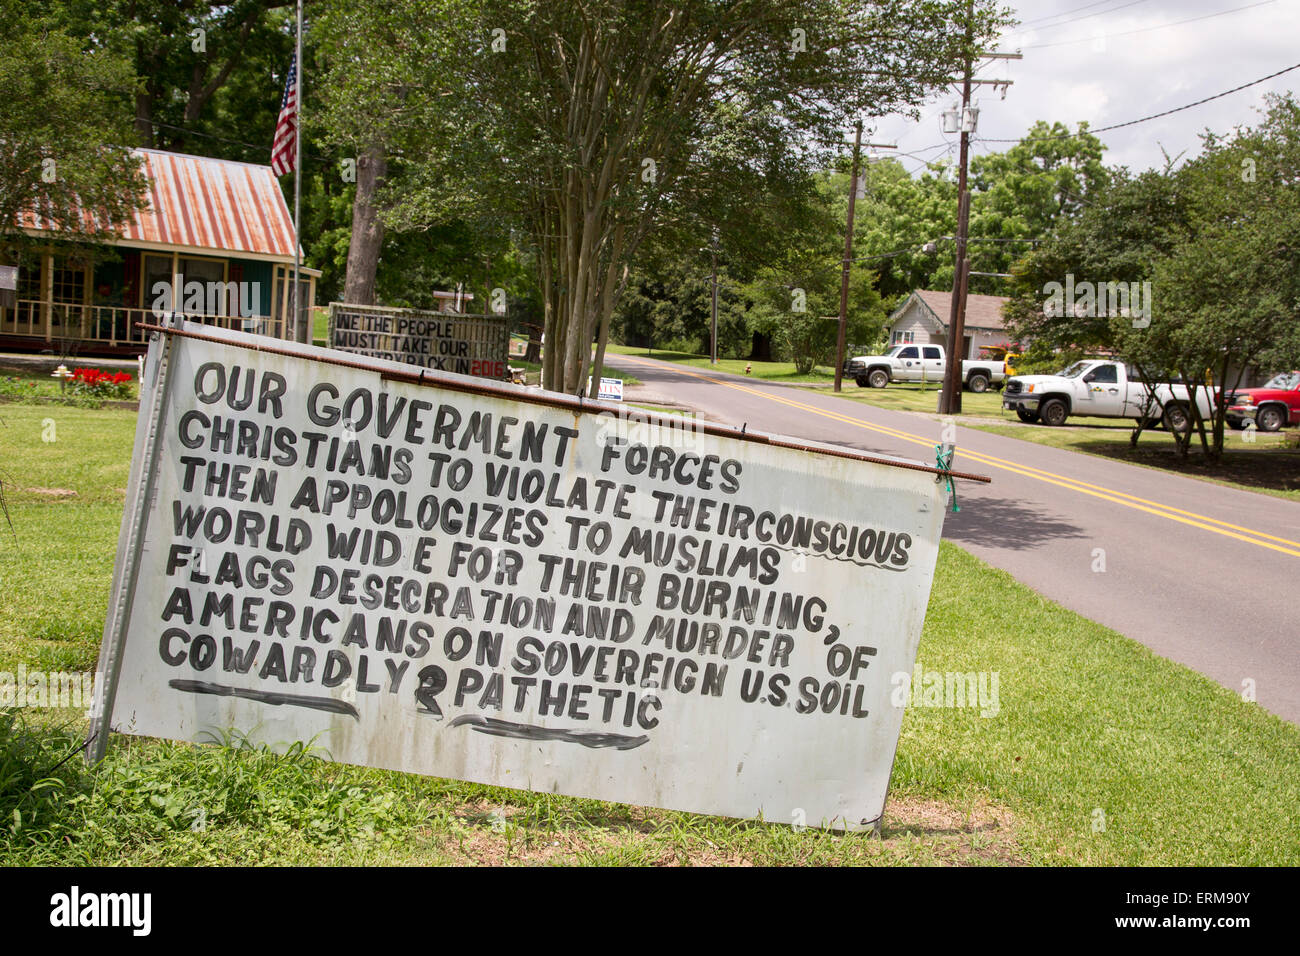 Grosse Tete, Louisiana - ein Zeichen auf ein Louisiana Highway prangert die Regierung für die angebliche Anti-christliche Aktionen. Stockfoto